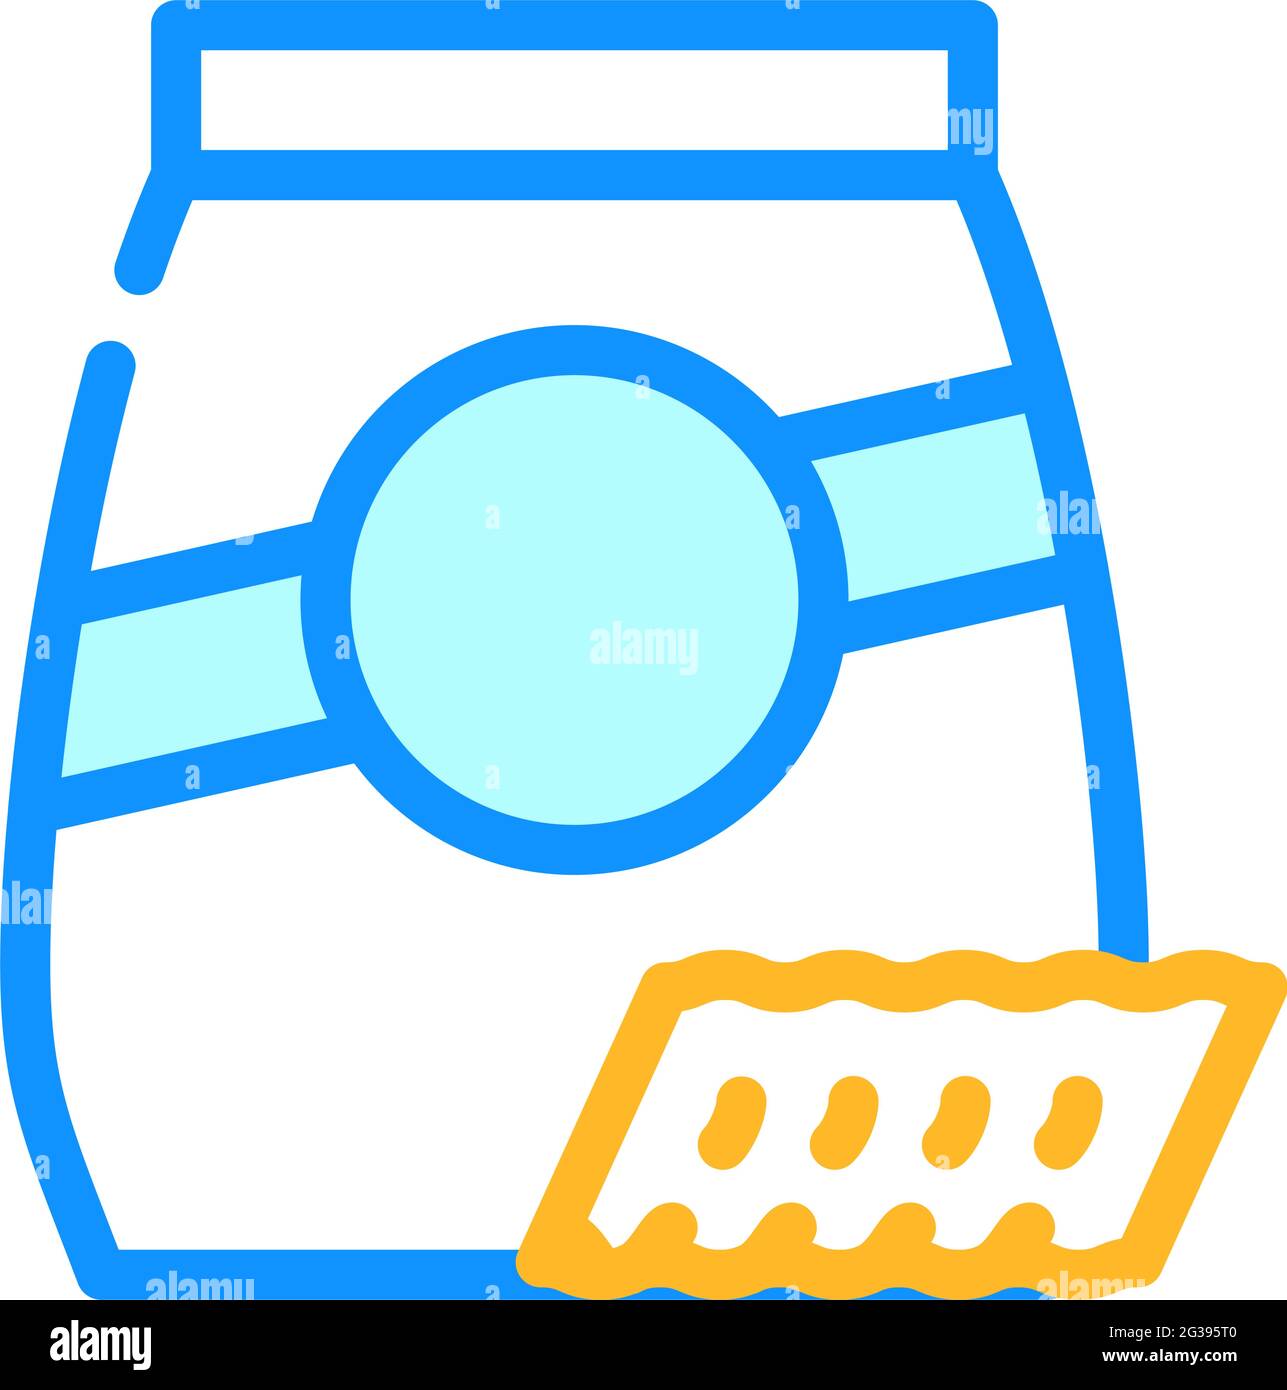 ricciutelle pasta color icon vector illustration Stock Vector